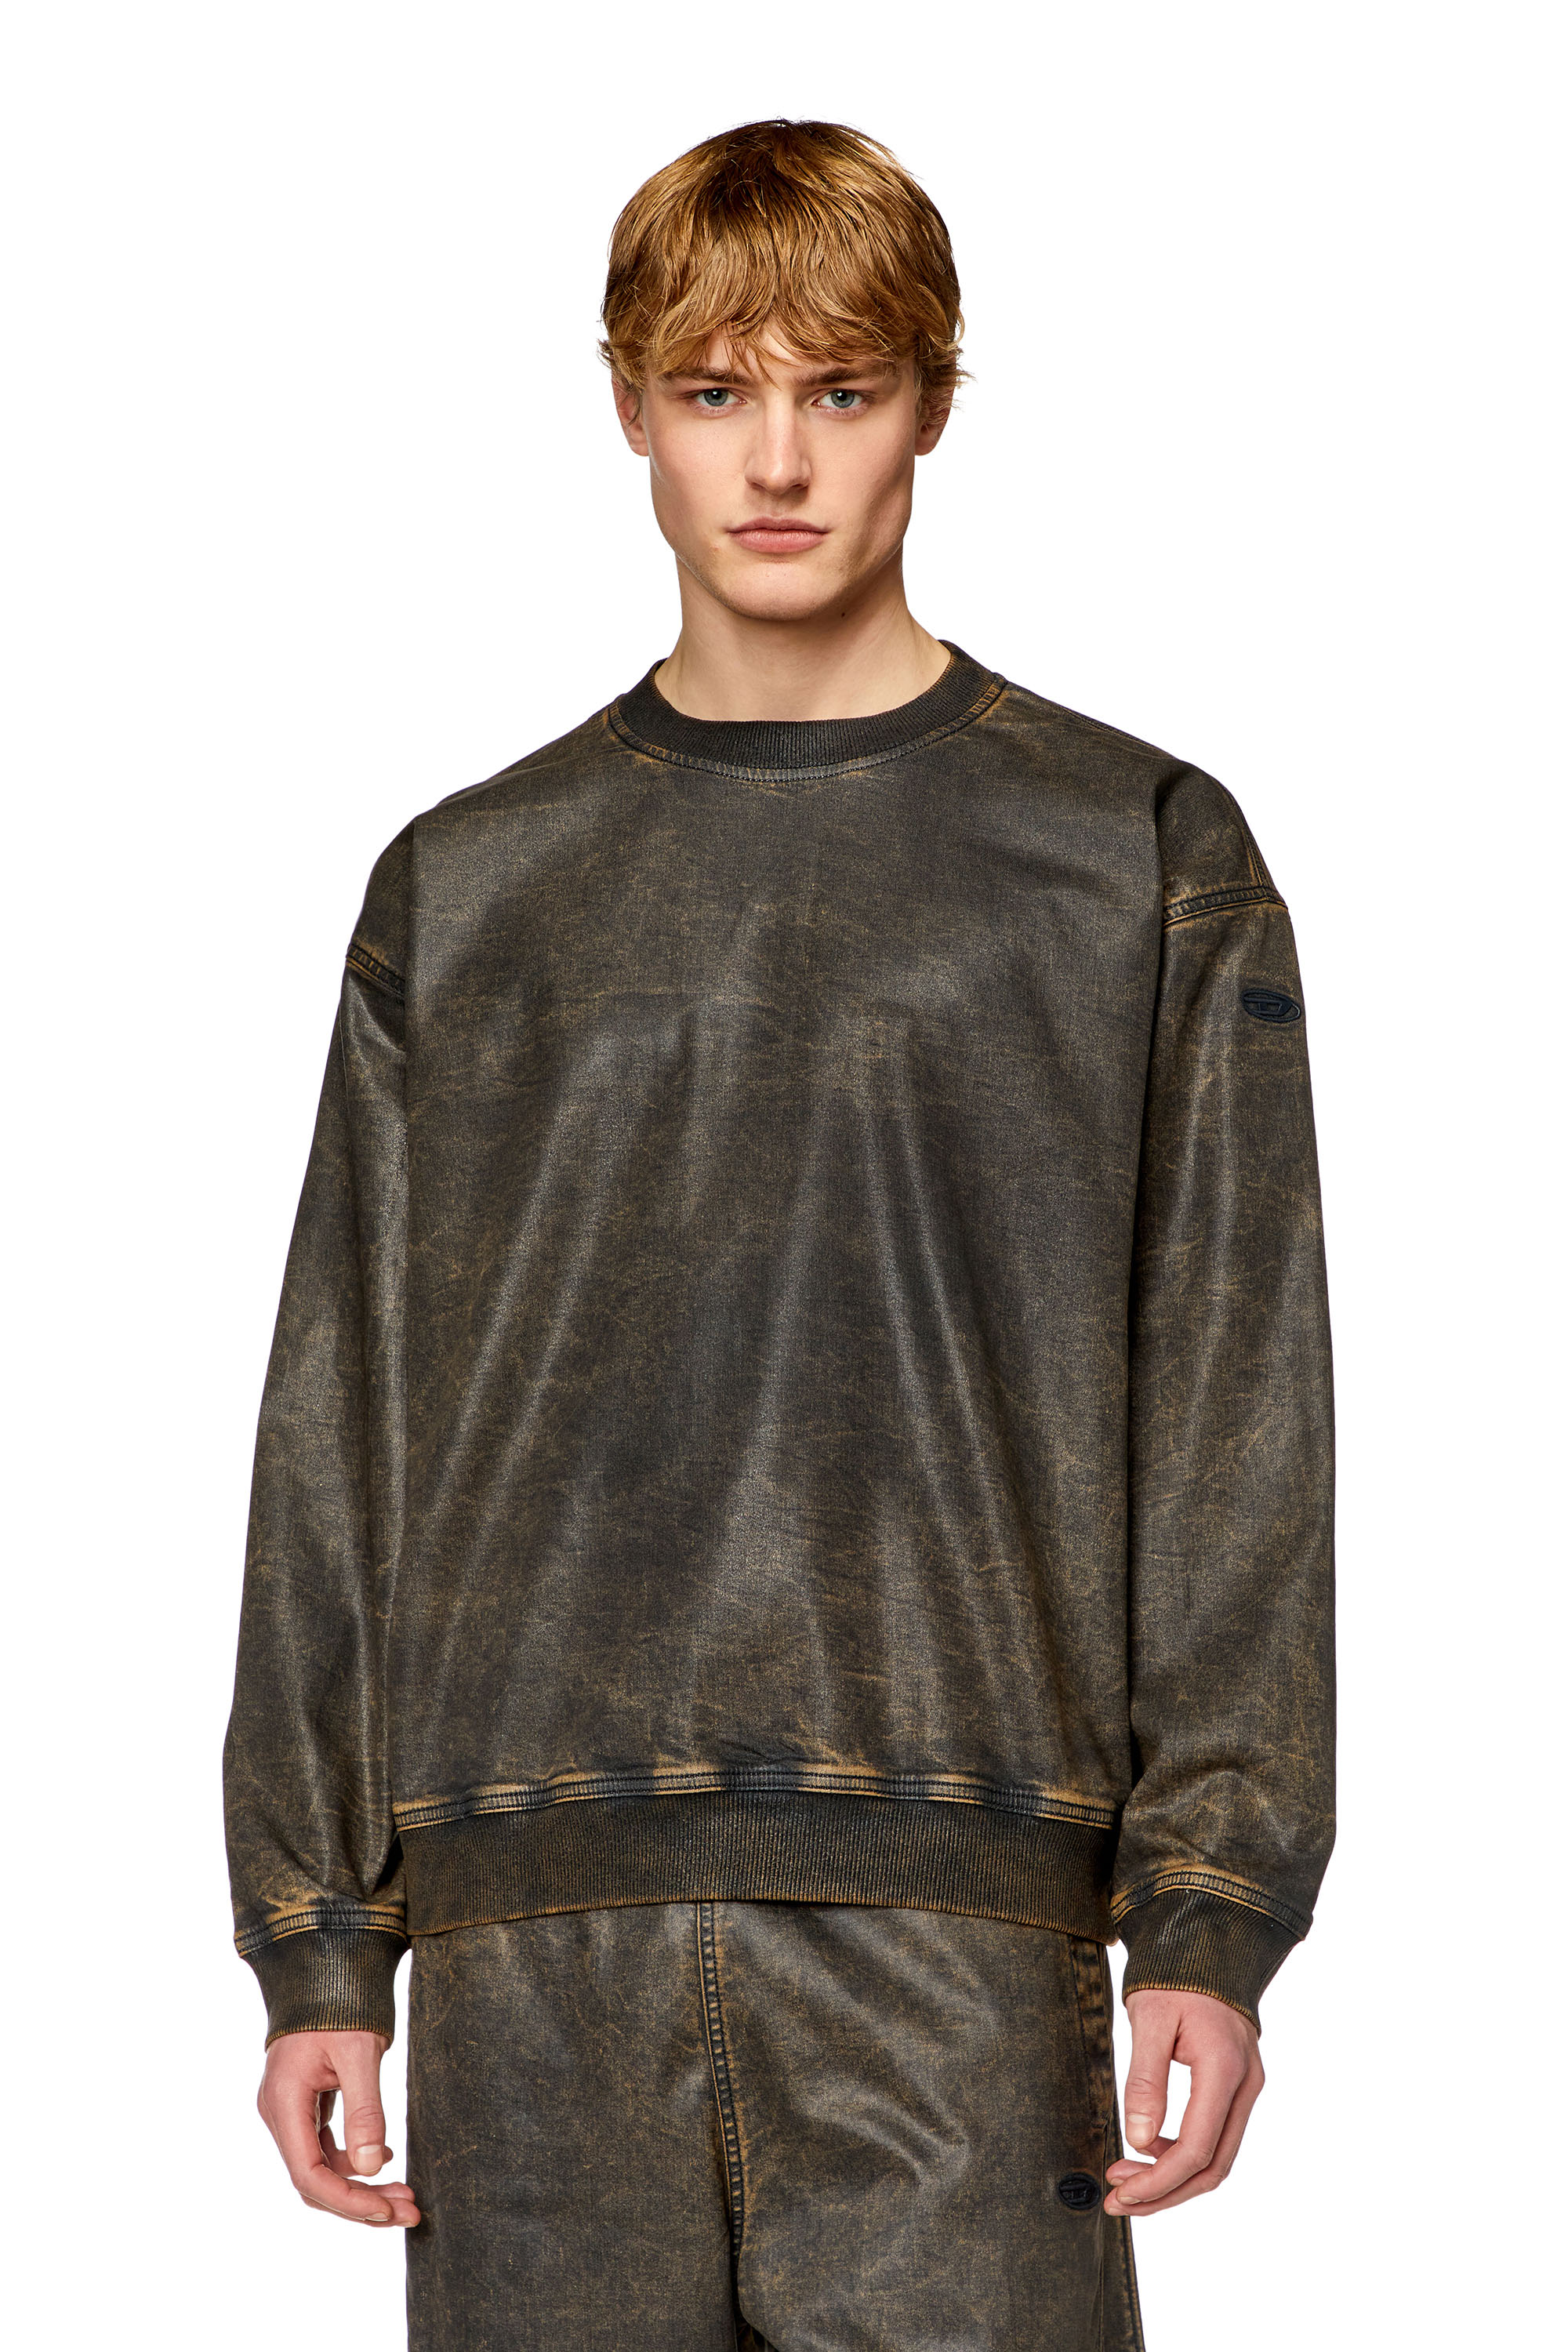 Diesel - Sweat-shirt en Track Denim enduit effet marbré - Pull Cotton - Homme - Polychrome